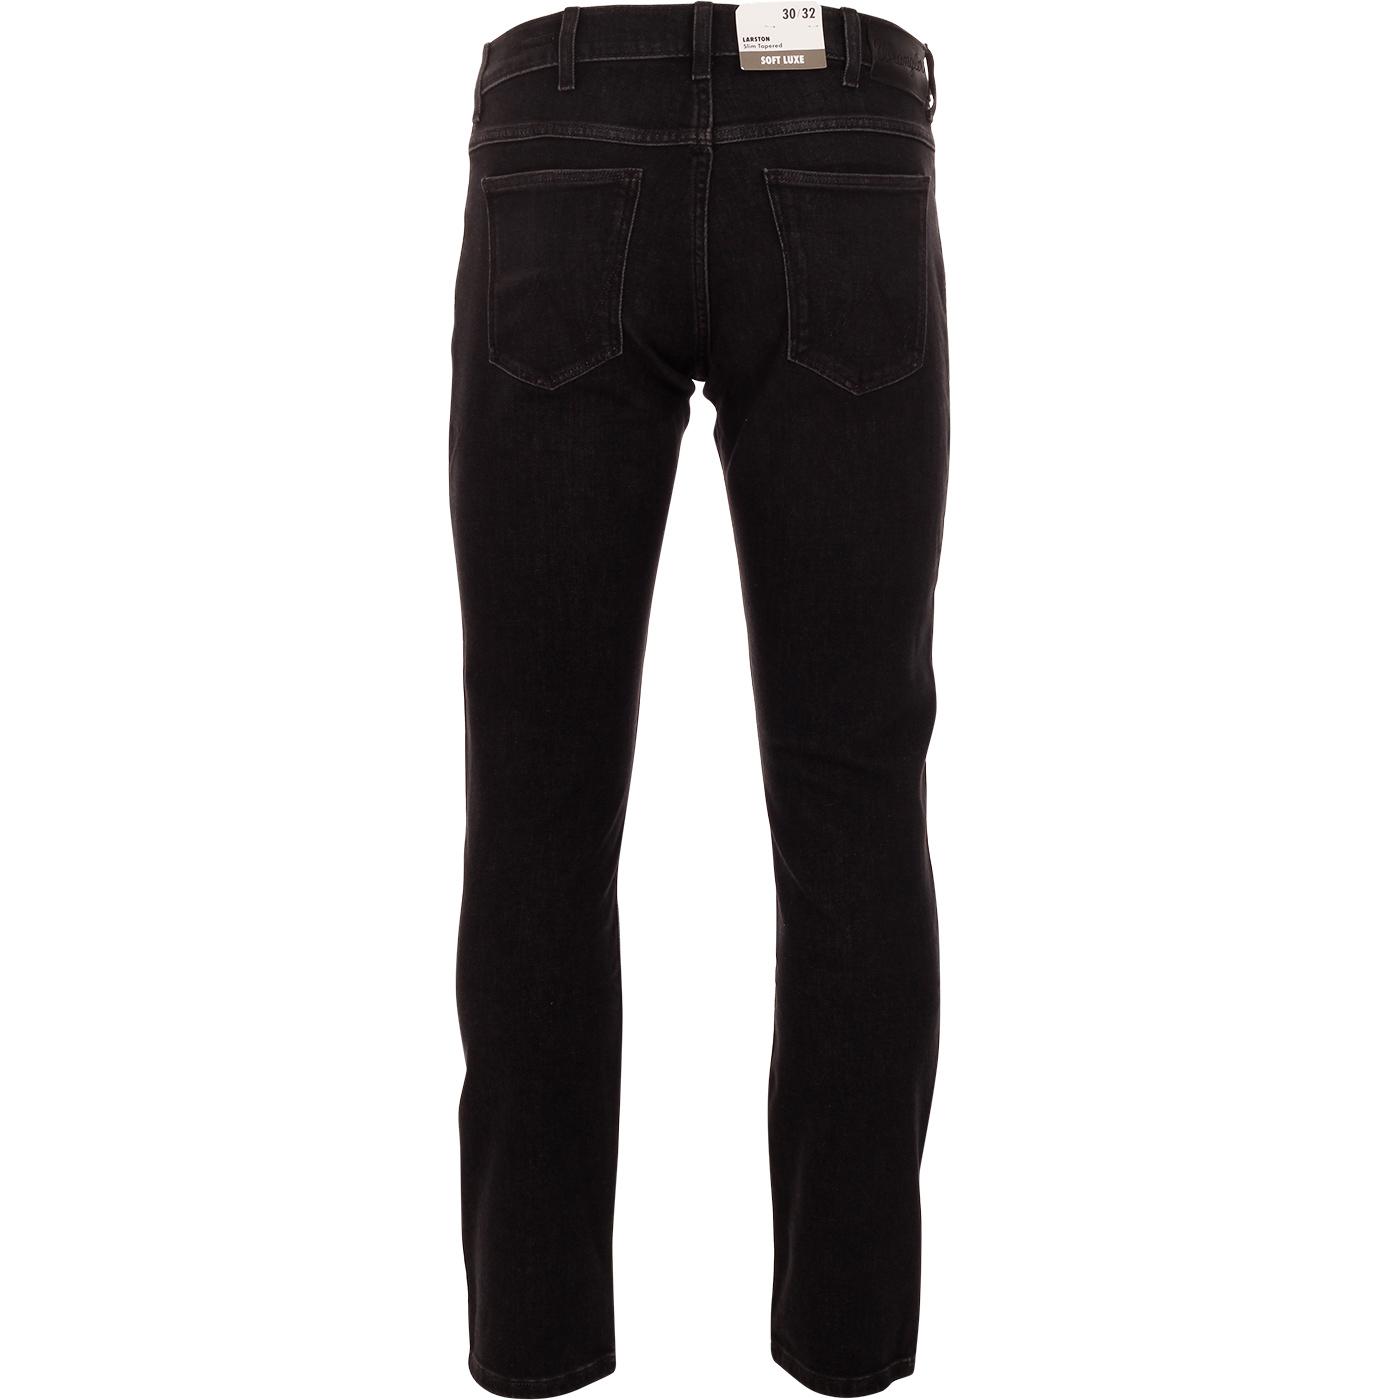 WRANGLER Larston Slim Tapered Denim Jeans in Soft Black